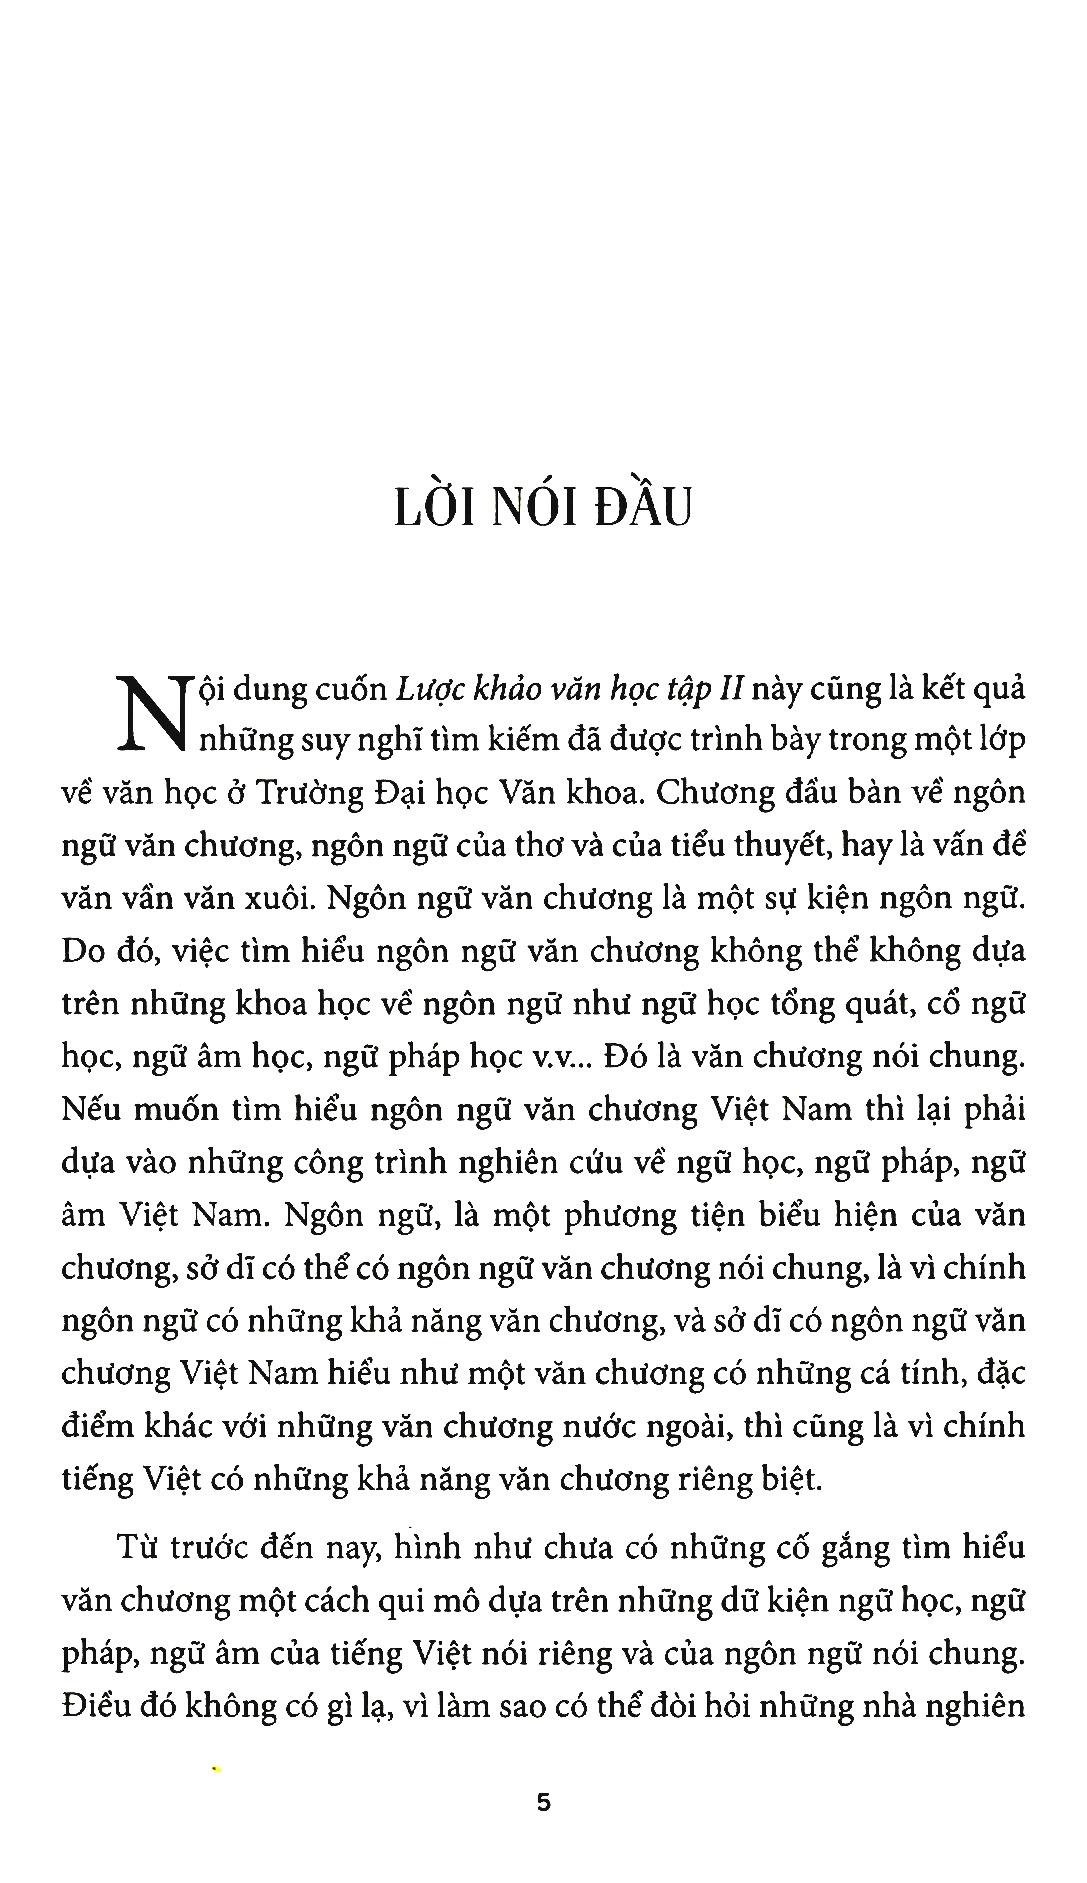 Lược Khảo Văn Học Ii - Ngôn Ngữ Văn Chương Và Kịch PDF